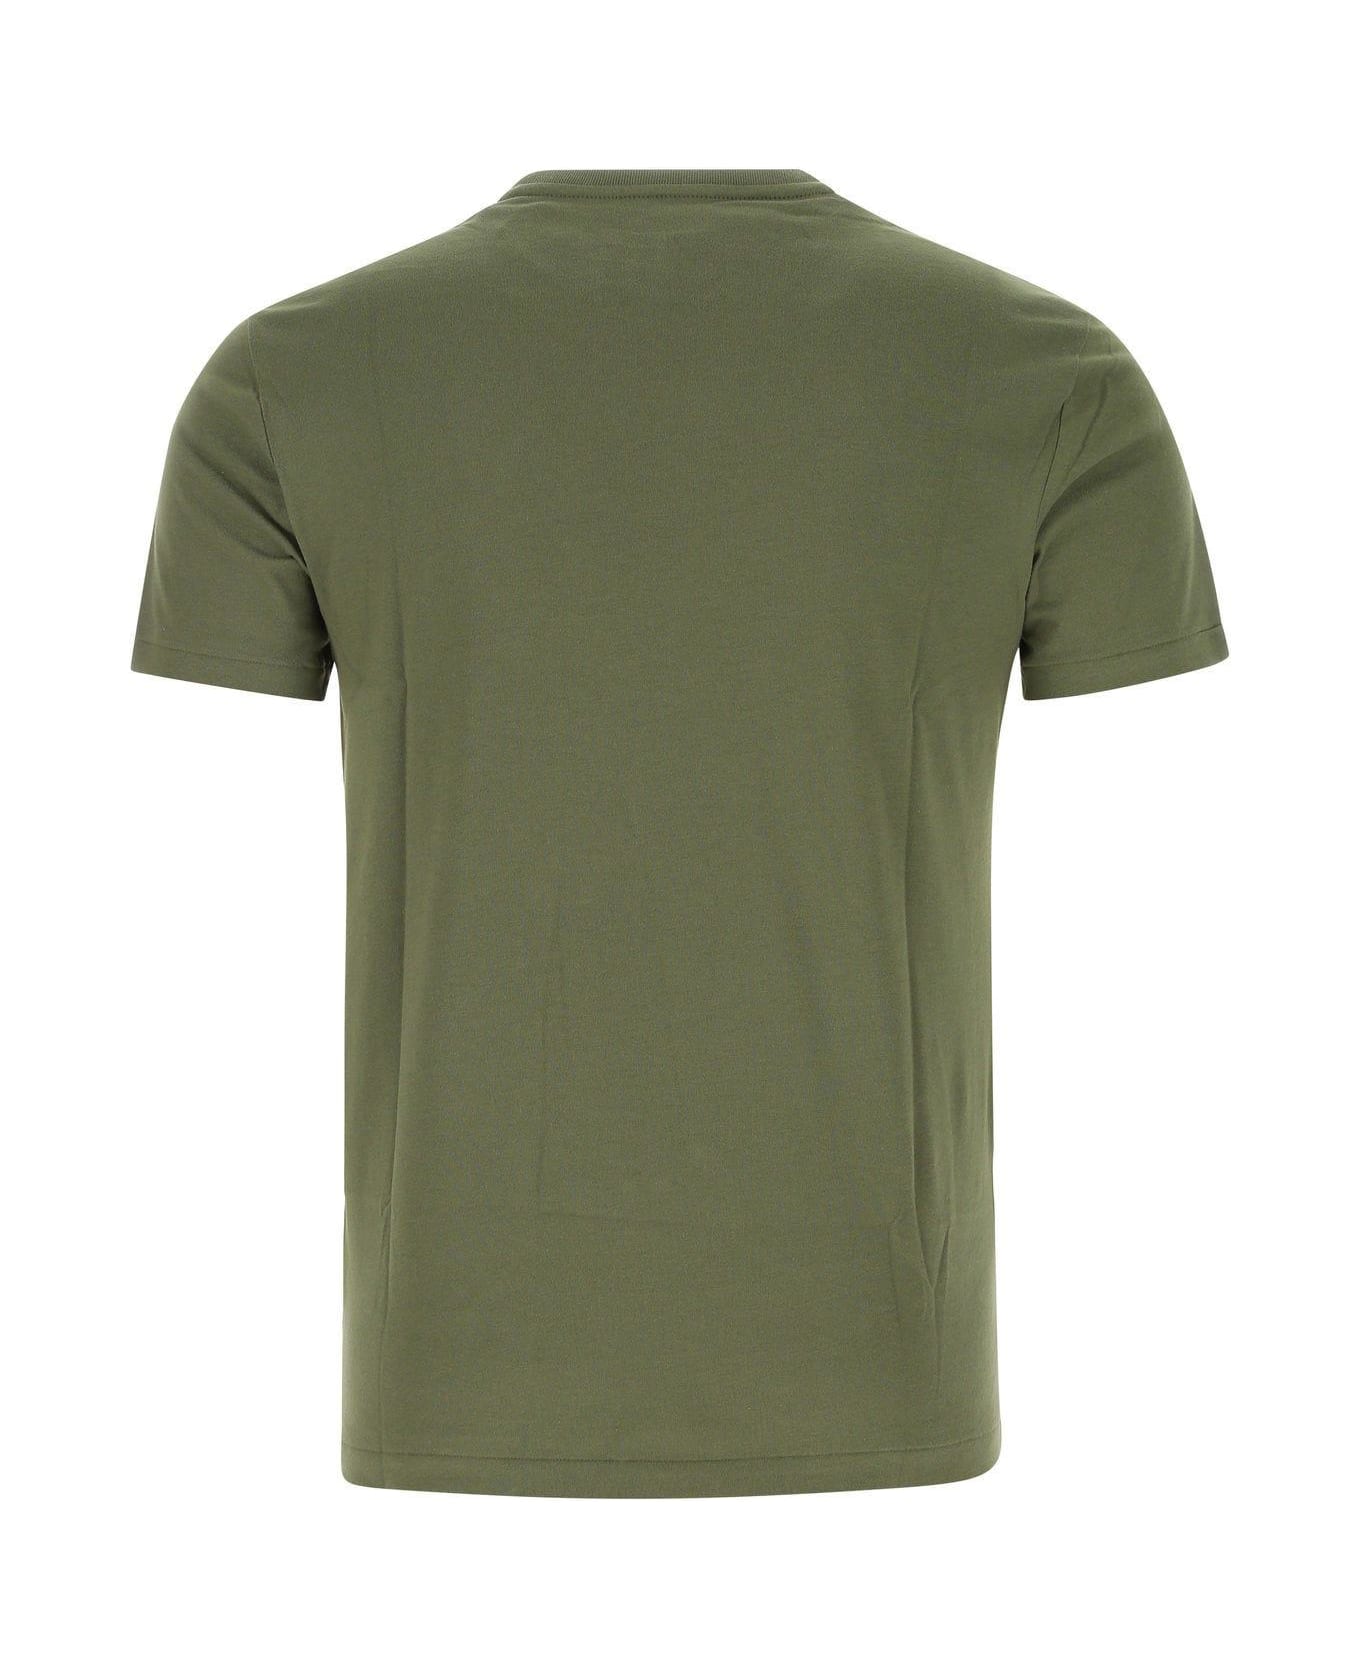 Polo Ralph Lauren Military Green Cotton T-shirt Polo Ralph Lauren - 292 シャツ